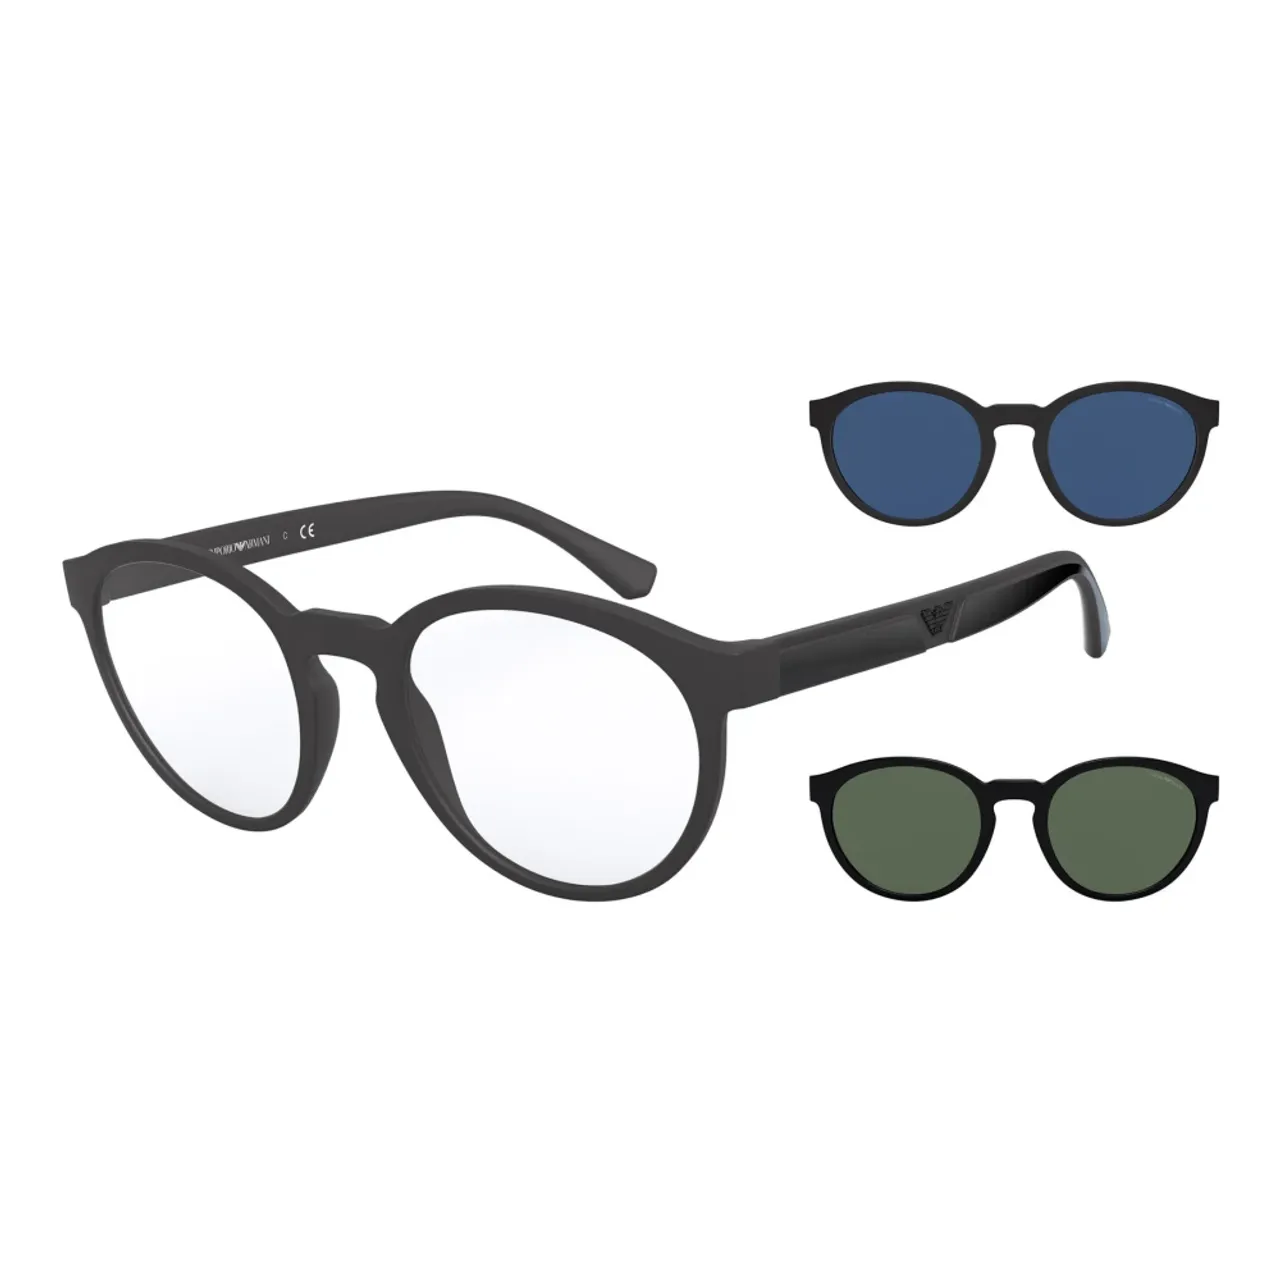 Emporio Armani , Eyewear frames EA 4152 ,Black male, Sizes: